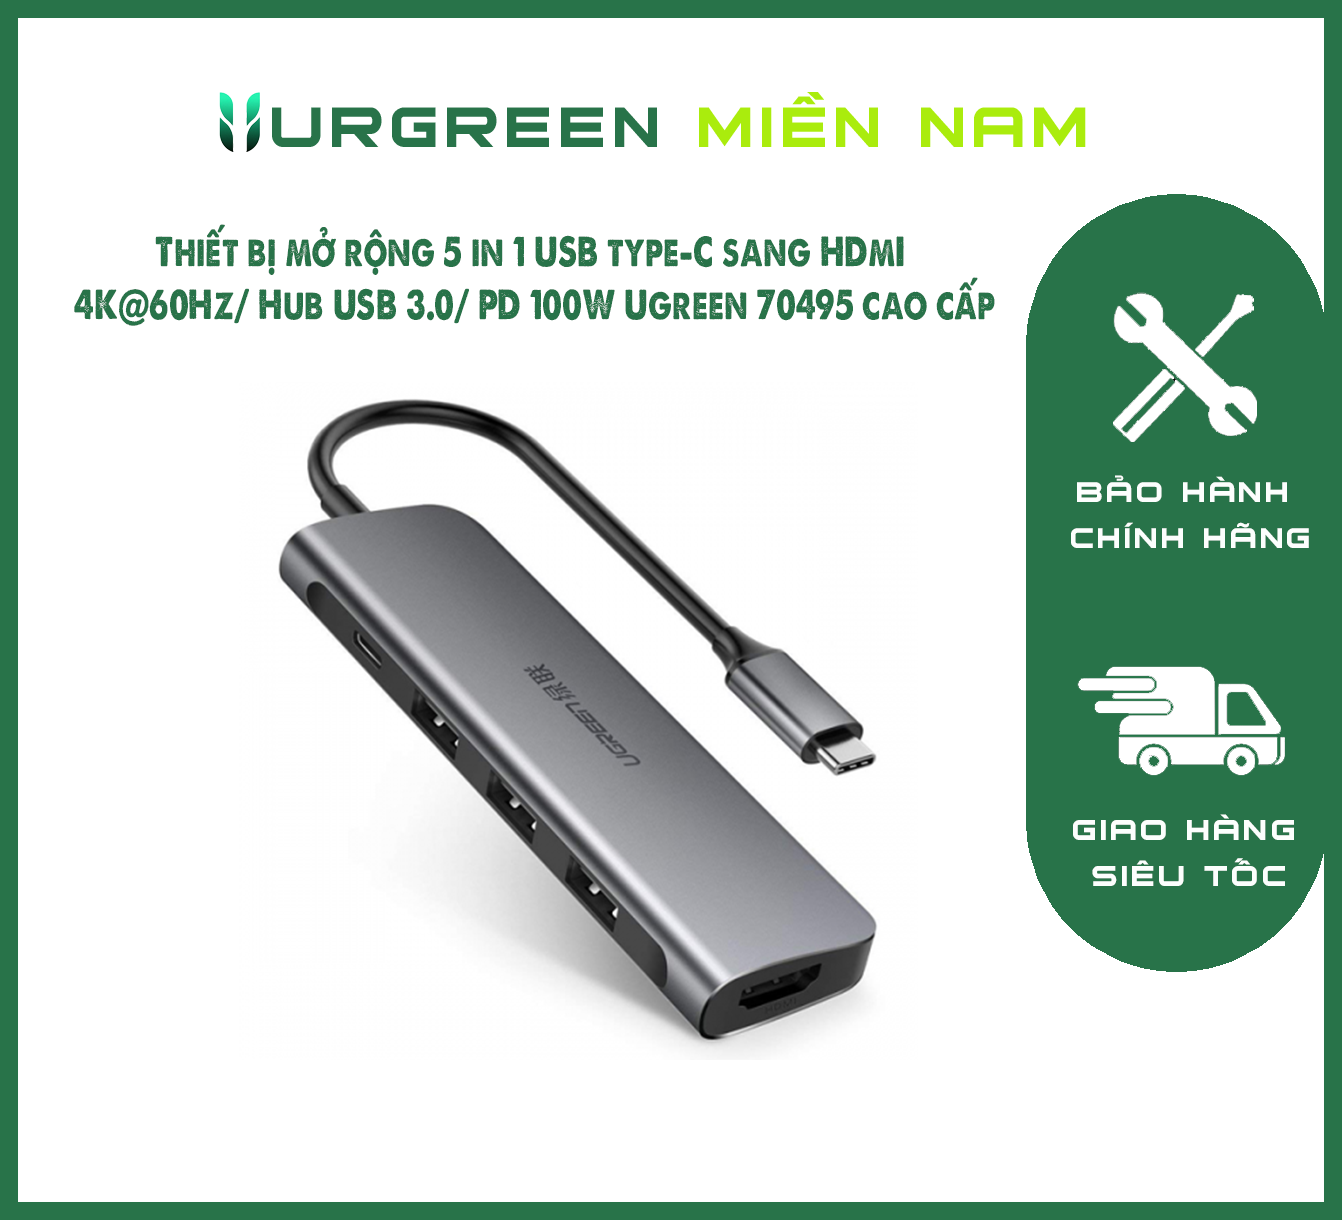 Thiết bị mở rộng 5 in 1 USB type-C sang HDMI 4K@60Hz/ Hub USB 3.0/ PD 100W Ugreen 70495 cao cấp